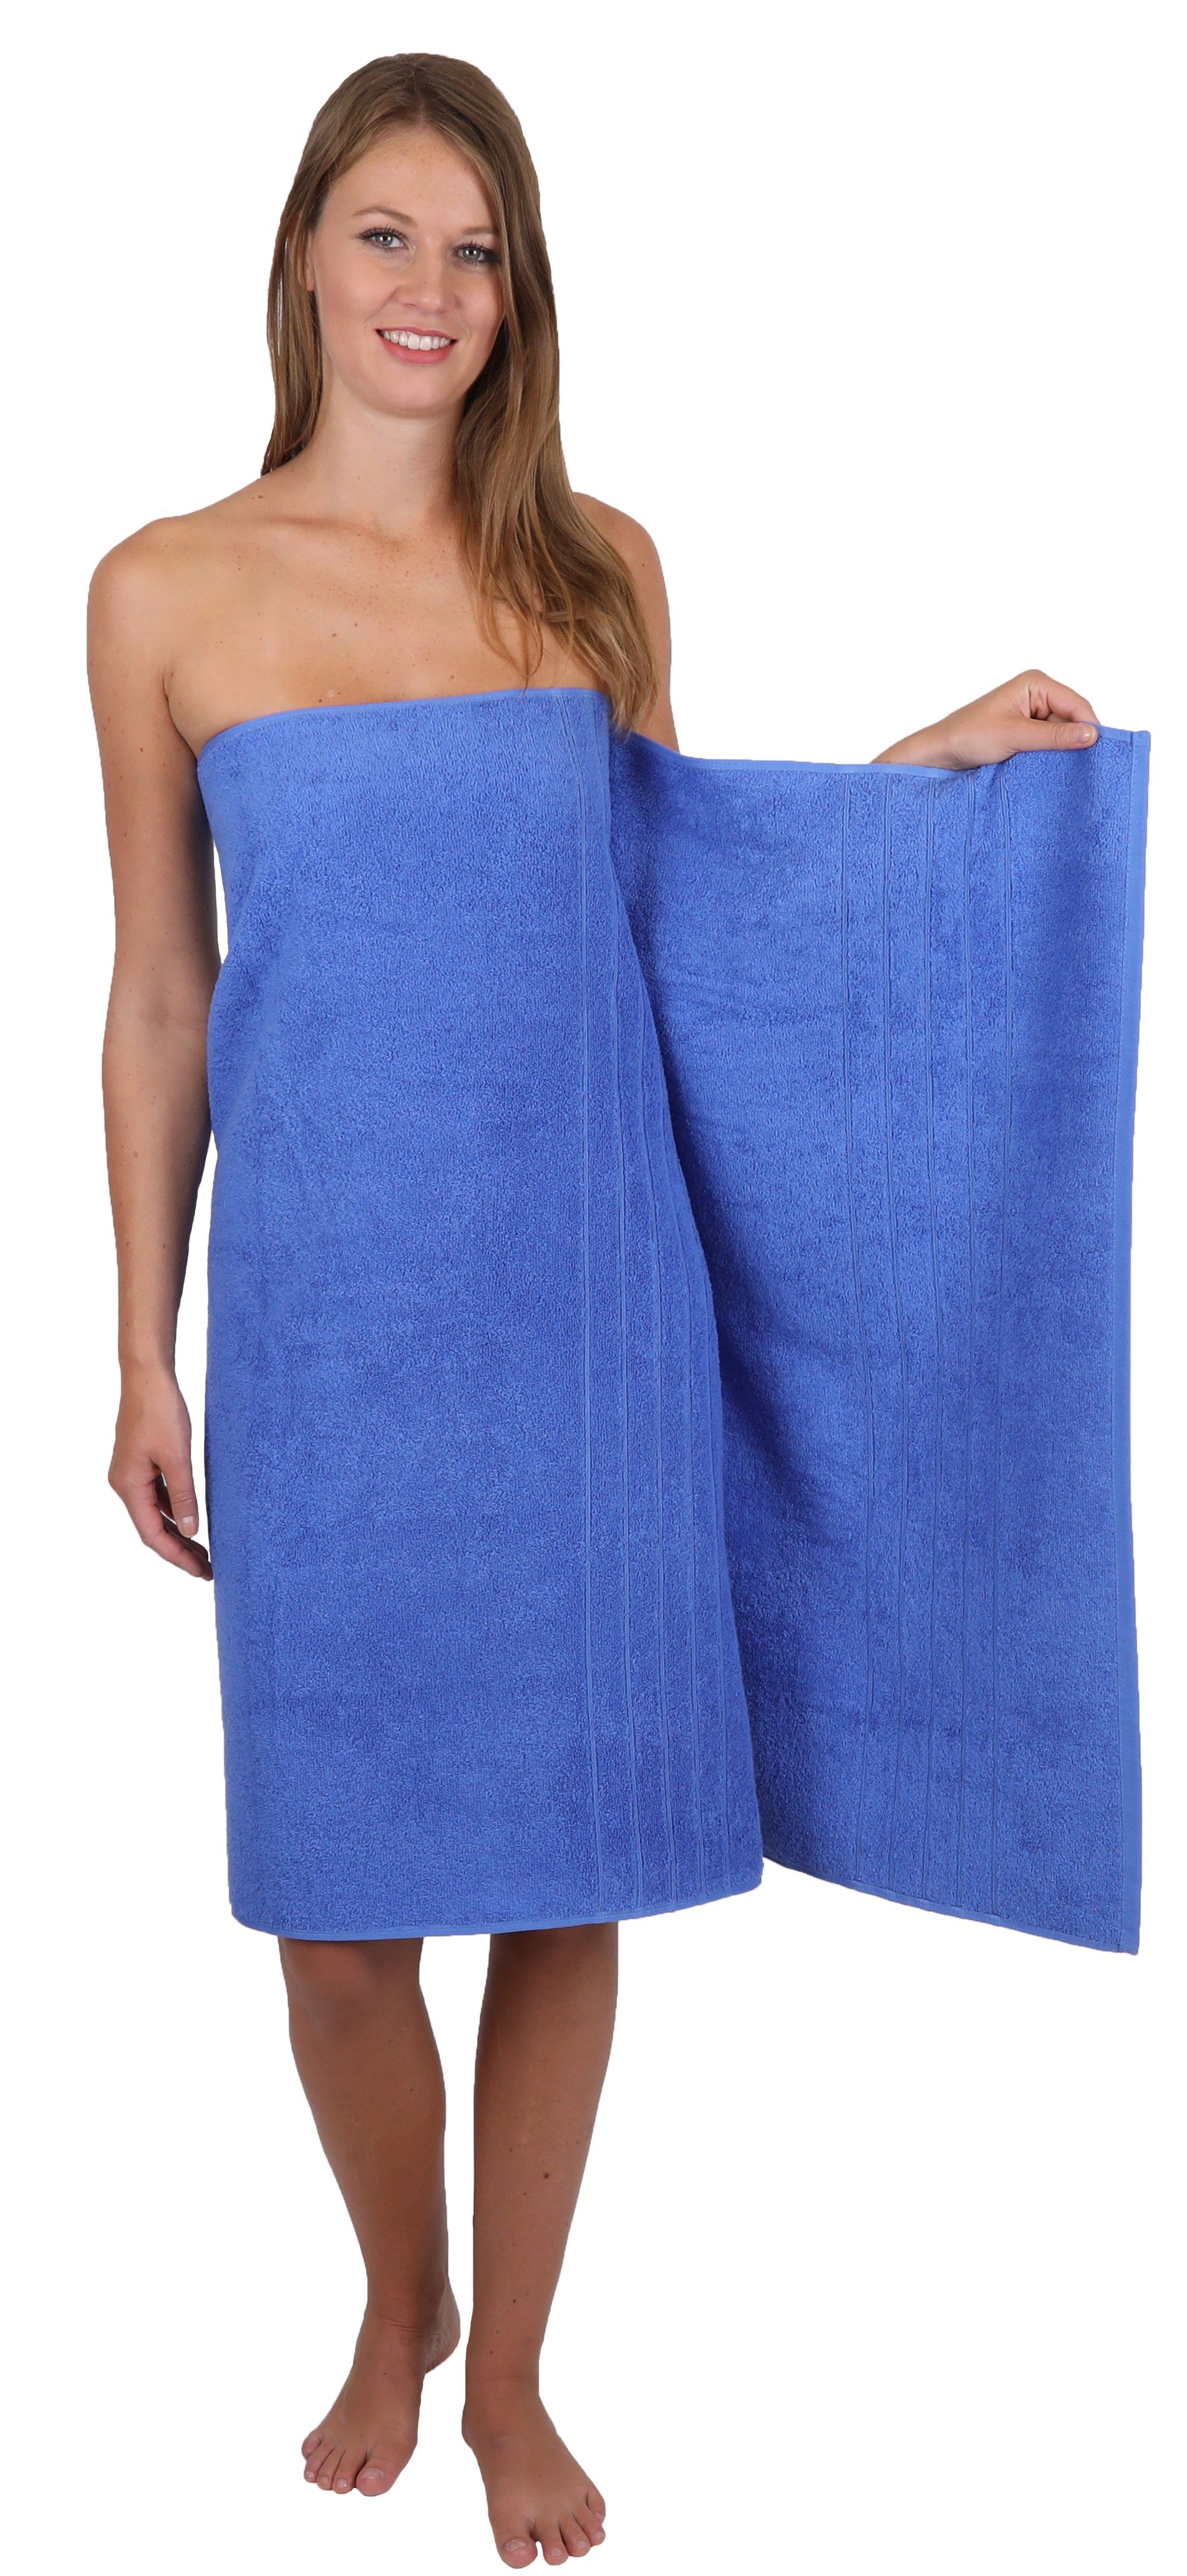 1 Baumwolle, Handtuch Betz 1 Handtuch-Set Seiftuch 4-TLG. Baumwolle Set blau, 1 Duschtuch Deluxe Farbe 100% 1 Handtuch 100% Badetuch (4-tlg)